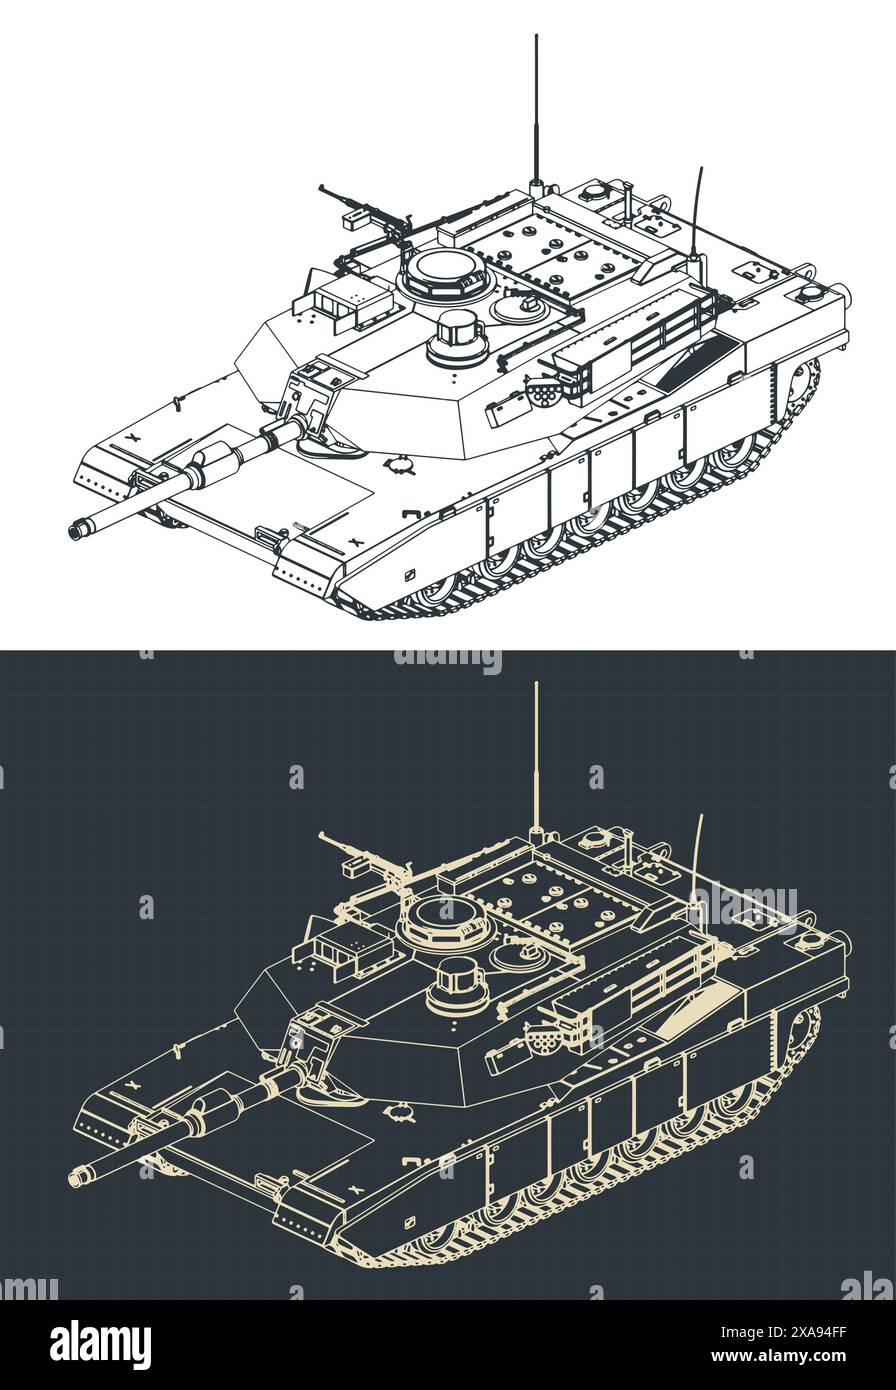 Stilisierte Vektor-Illustrationen von isometrischen Blaupausen eines Hauptkampfpanzers der US-Armee - M1 Abrams Stock Vektor